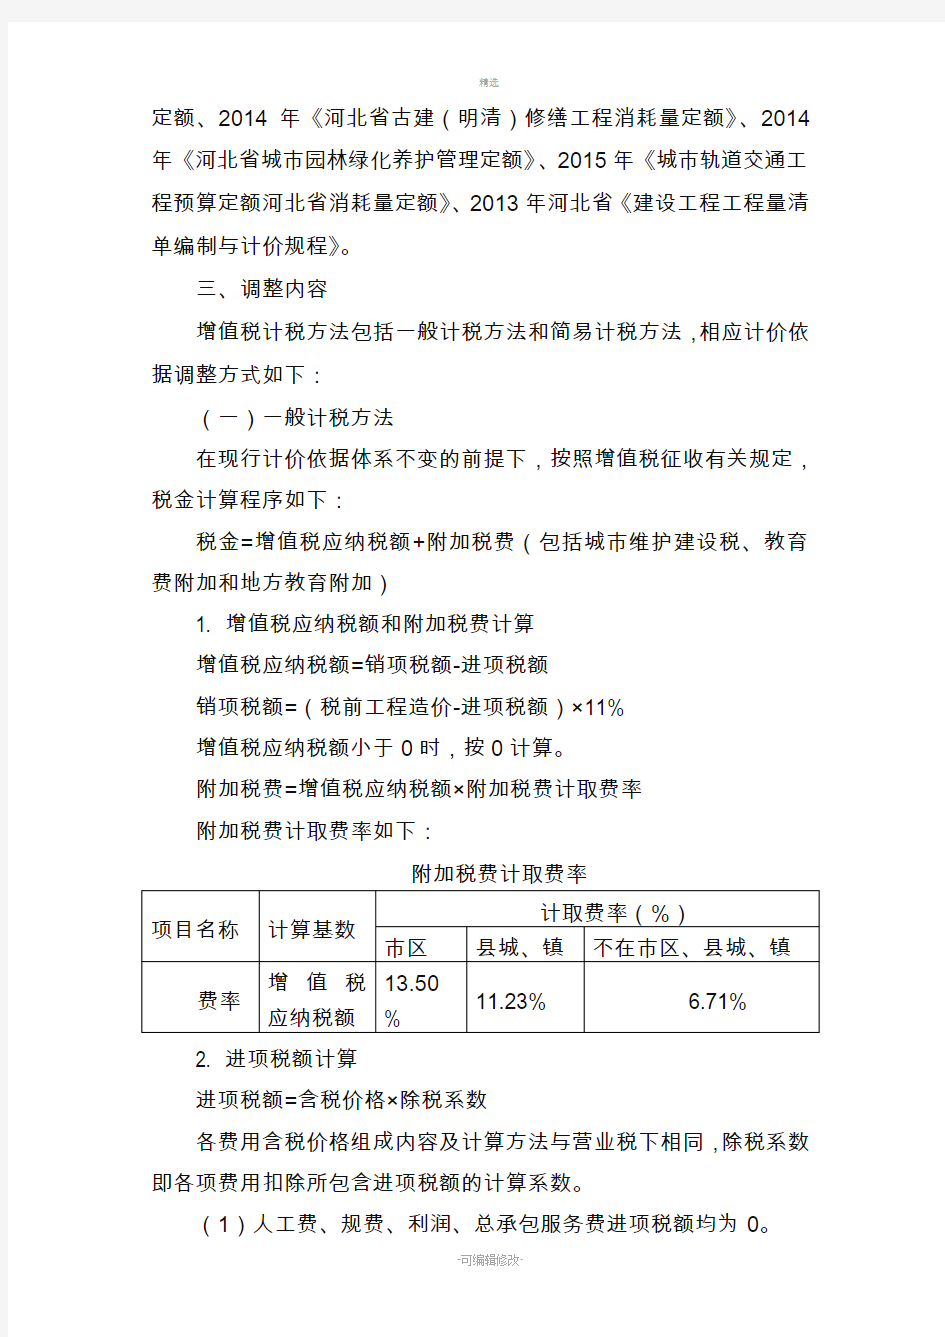 建筑业营改增河北省建筑工程-计价依据调整办法